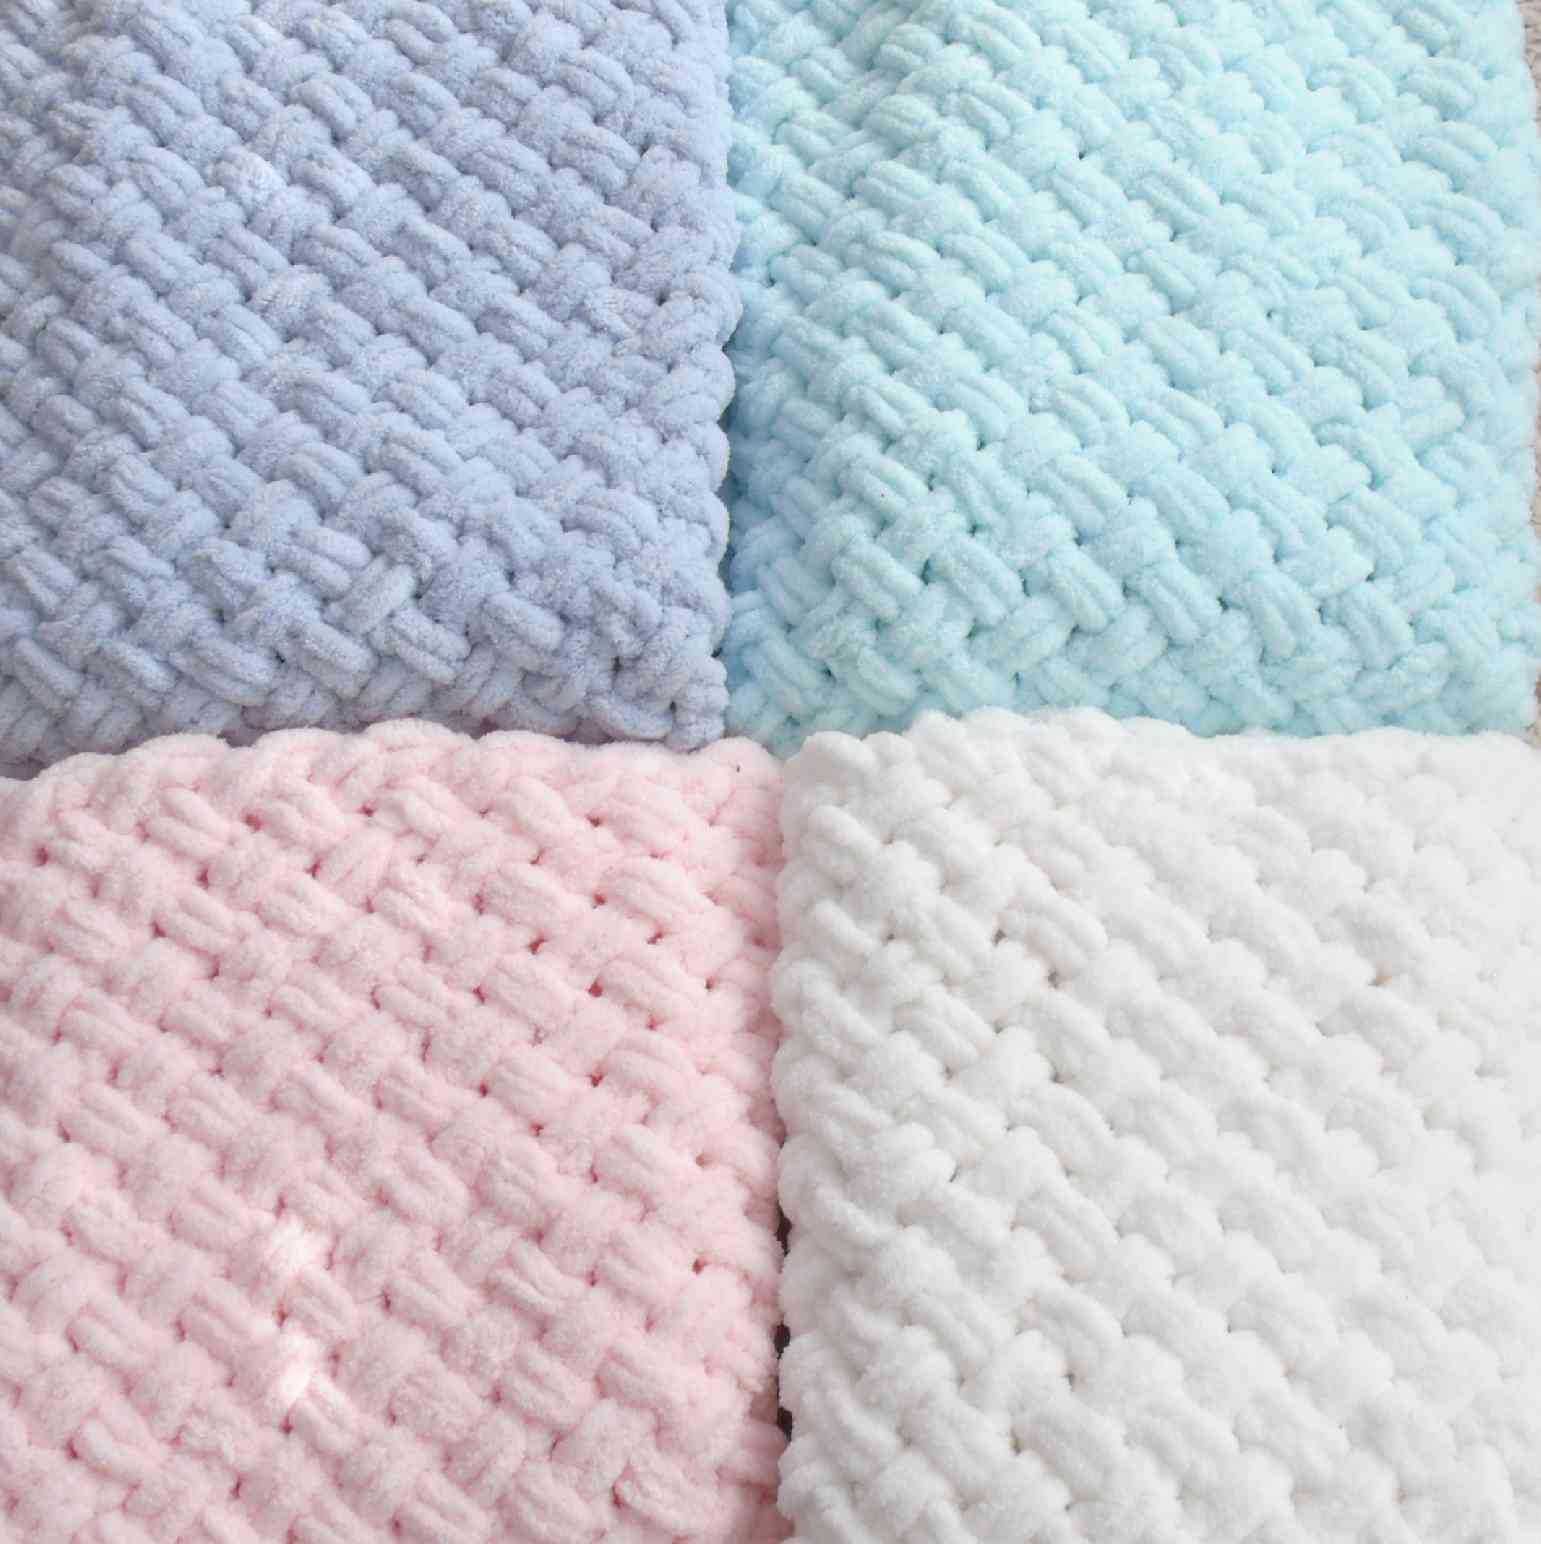 Бебешки одеялца от Ализе Пуфи